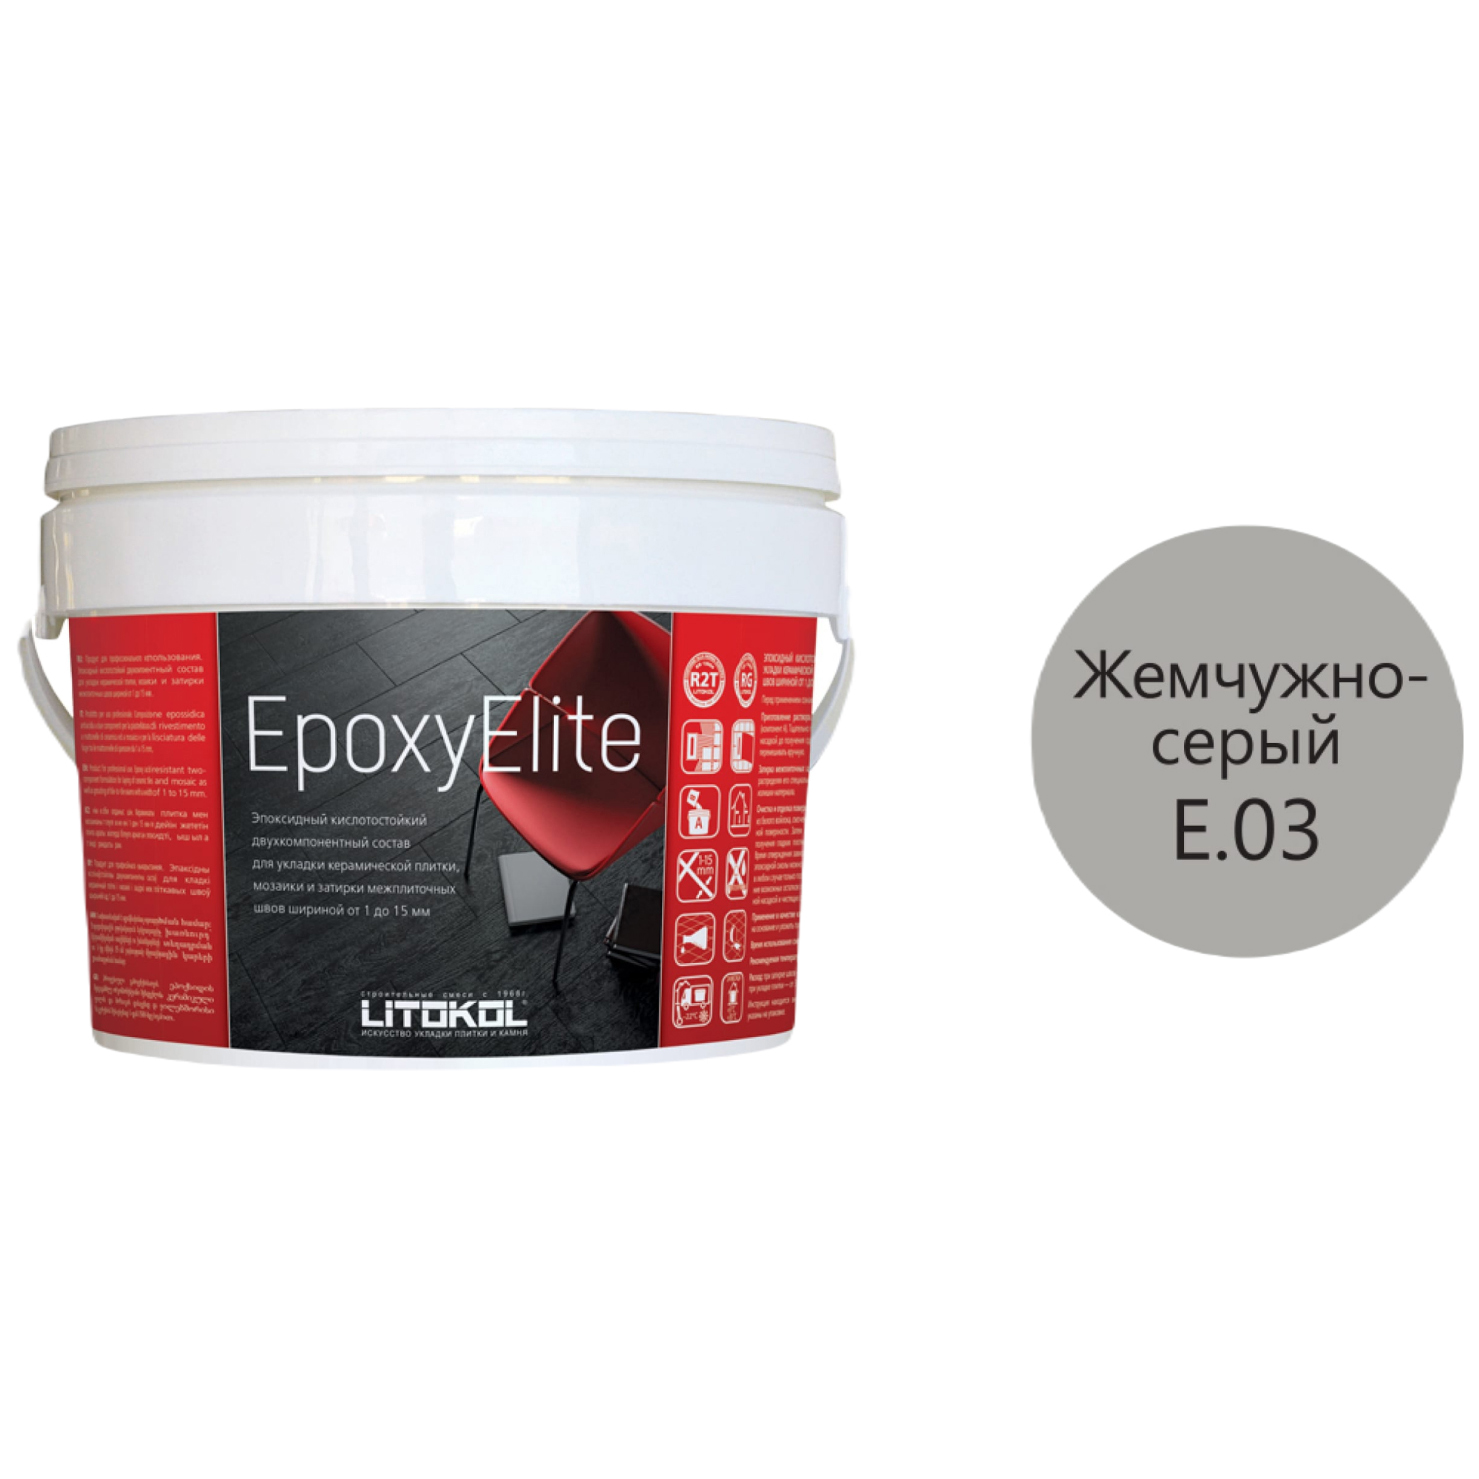 фото Litokol epoxyelite e.03 жемчужно-серый эпоксидный состав для укладки и затирки 482250003